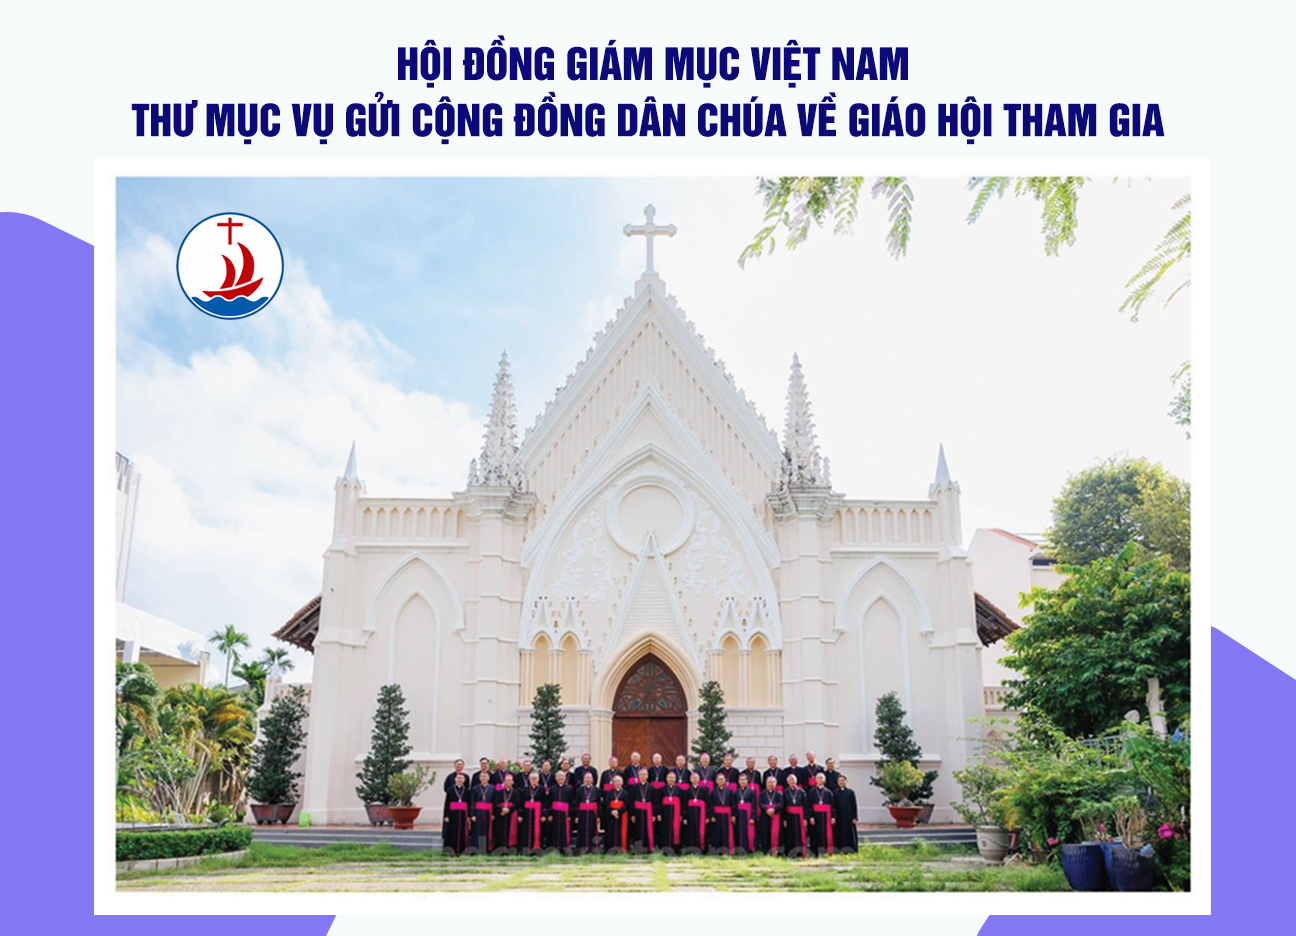 Hội đồng Giám mục Việt nam: thư mục vụ gửi Cộng đồng dân Chúa về Giáo hội tham gia